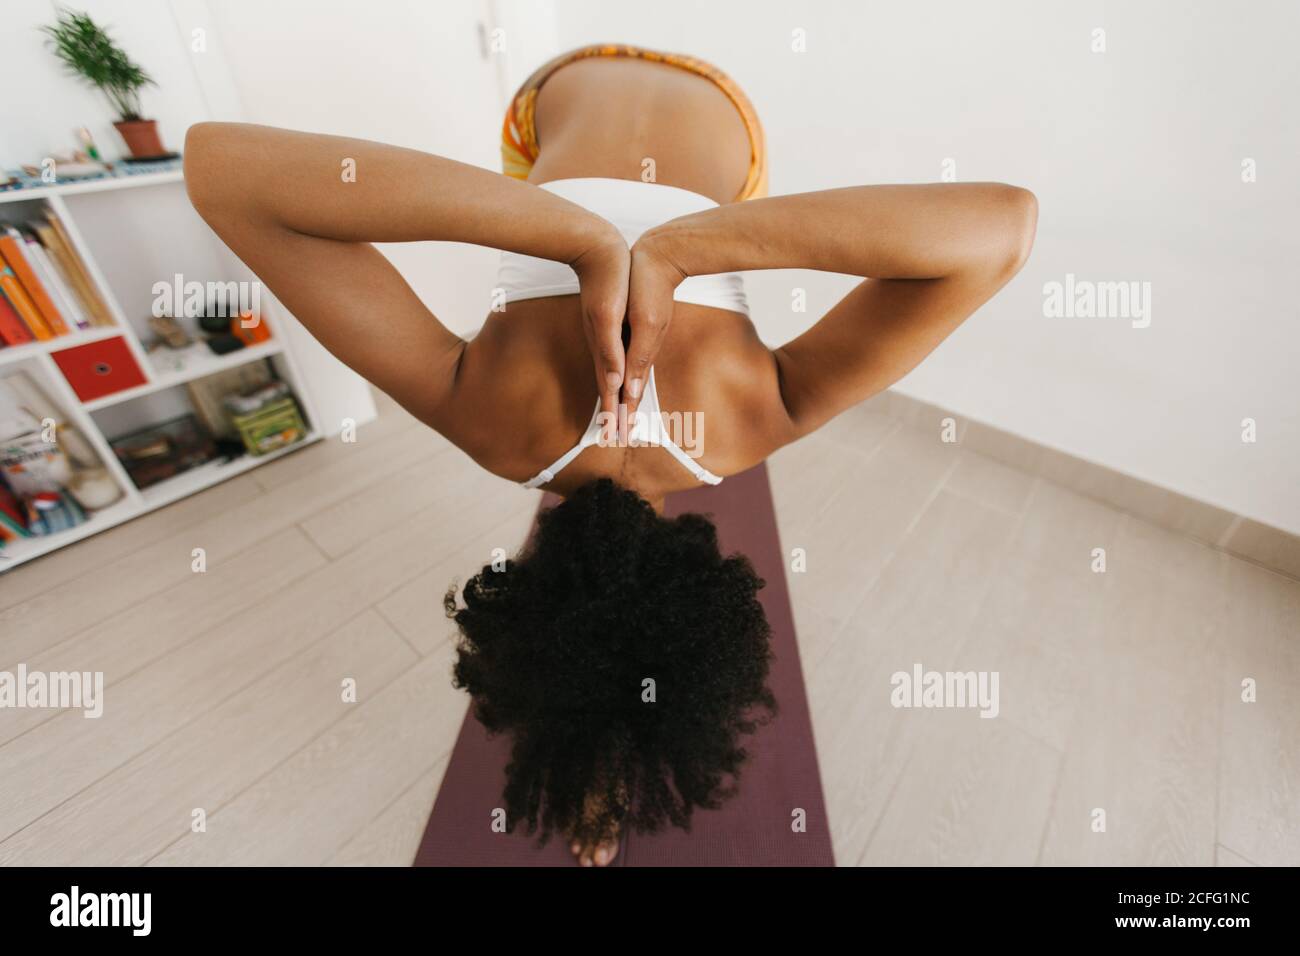 Rückansicht einer anonymen afroamerikanischen attraktiven jungen Frau, die im hellen Raum mit gefalteten Händen hinter dem Rücken eine Yogaposition durchführte Stockfoto